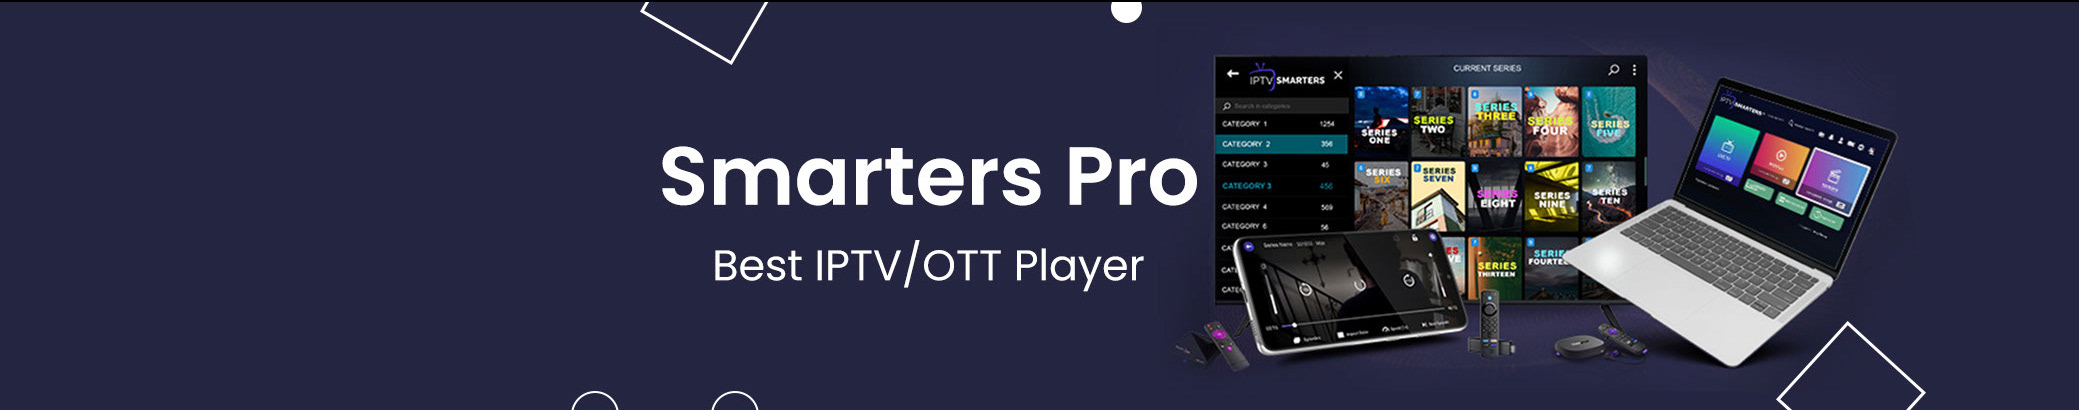 Profil-Banner von smarters pro